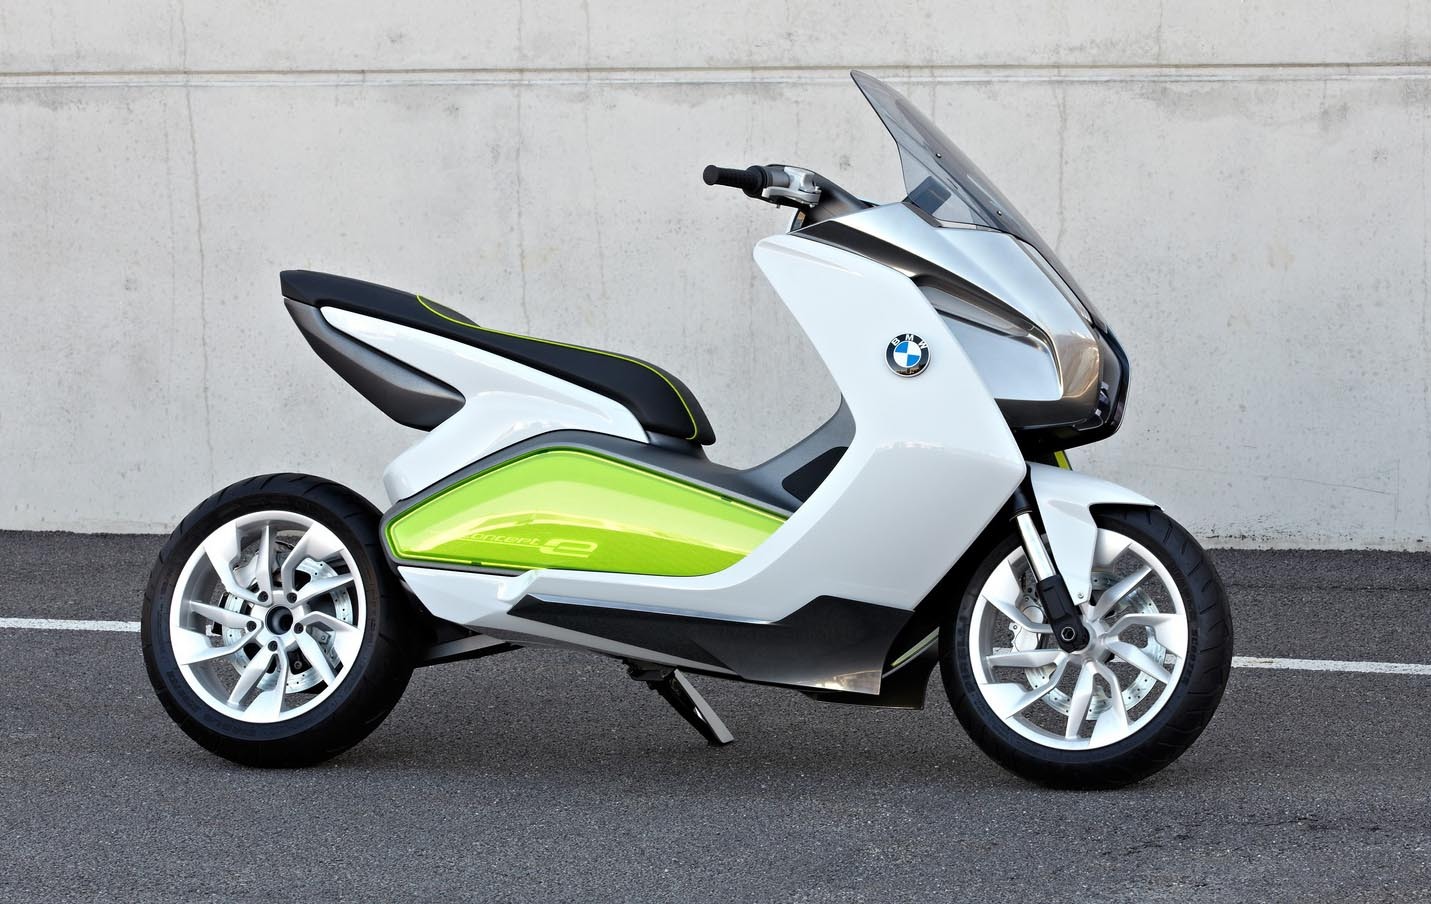 La finalul lui 2011, BMW va scoate doua maxi-scutere premium ca modele de serie